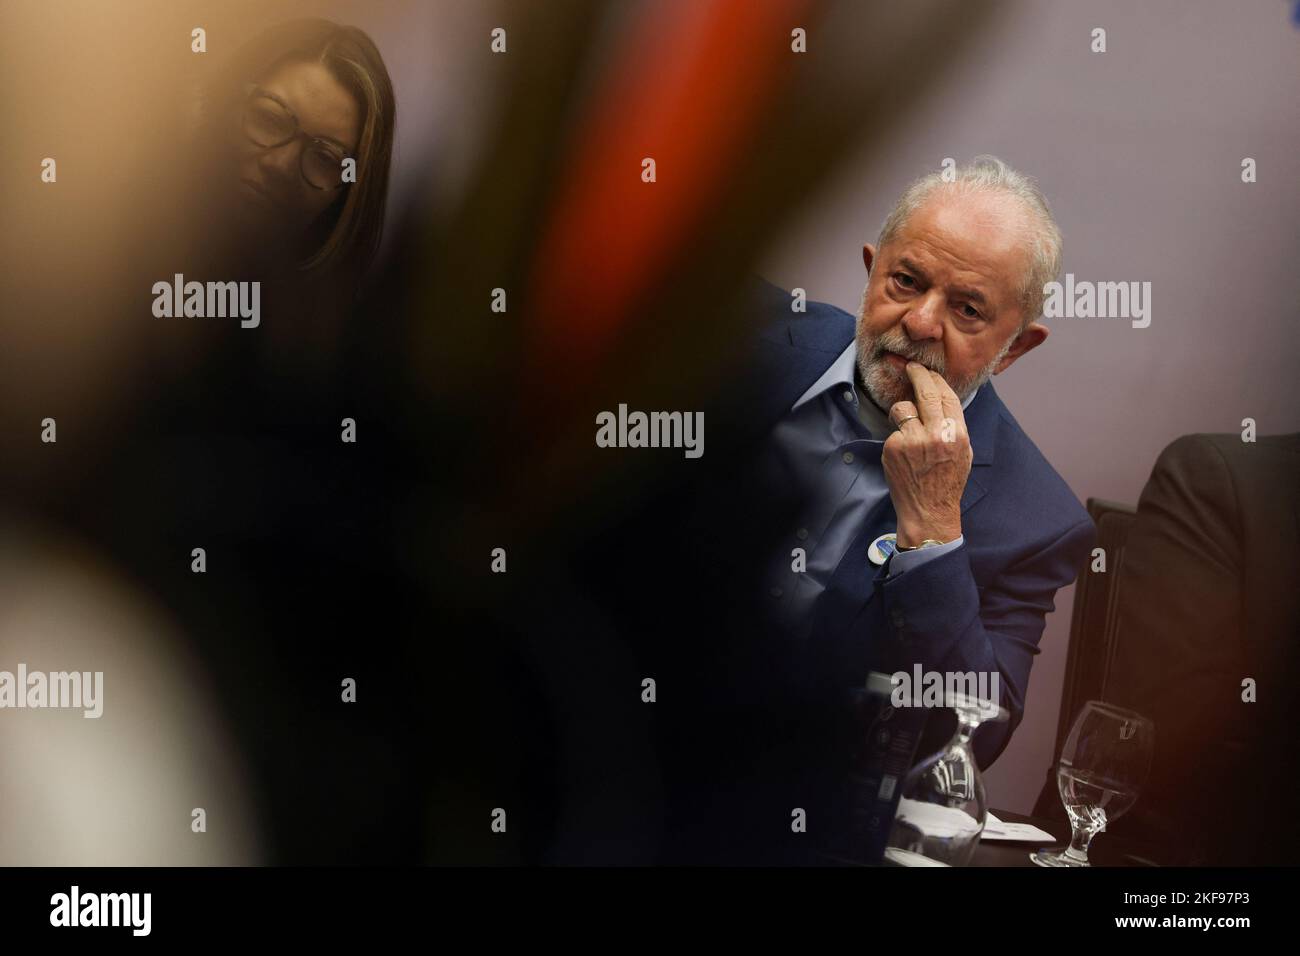 El Presidente electo de Brasil, Luiz Inácio Lula da Silva, asiste a una reunión en la CdP 27 en Sharm el-Sheik, Egipto, el 17 de noviembre de 2022. REUTERS/Mohamed Abd El Ghany Foto de stock